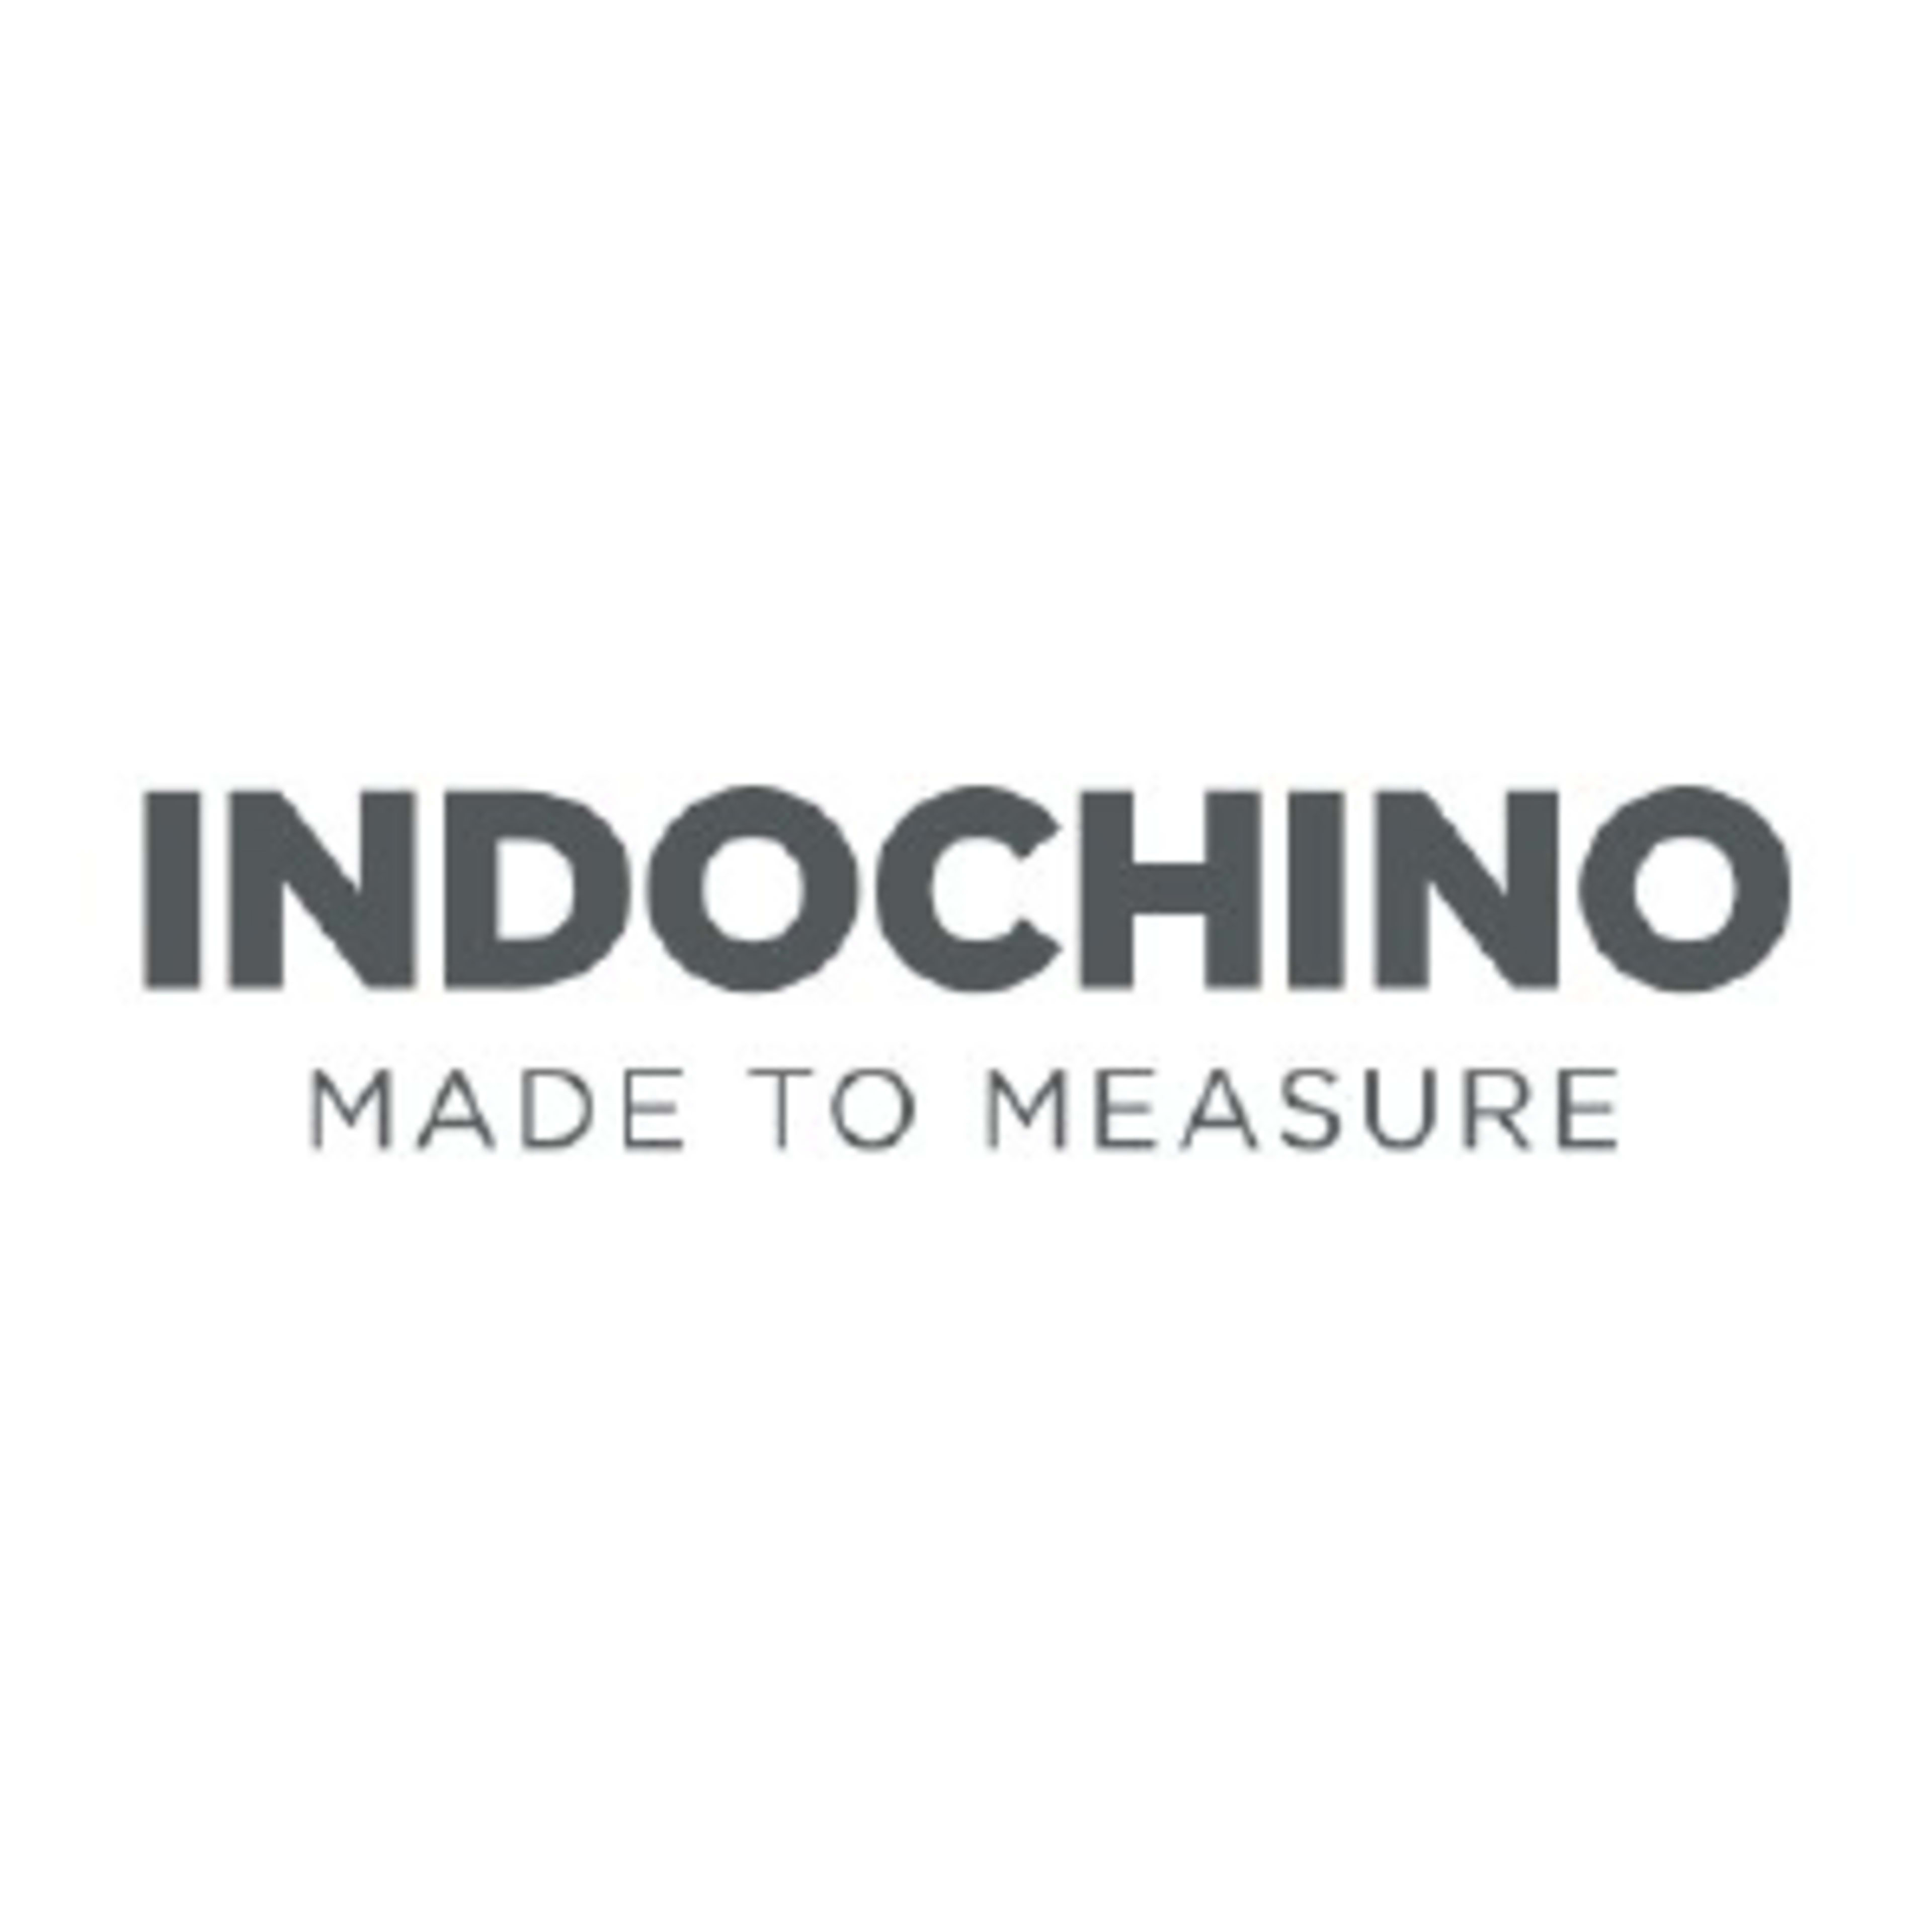 IndochinoCode